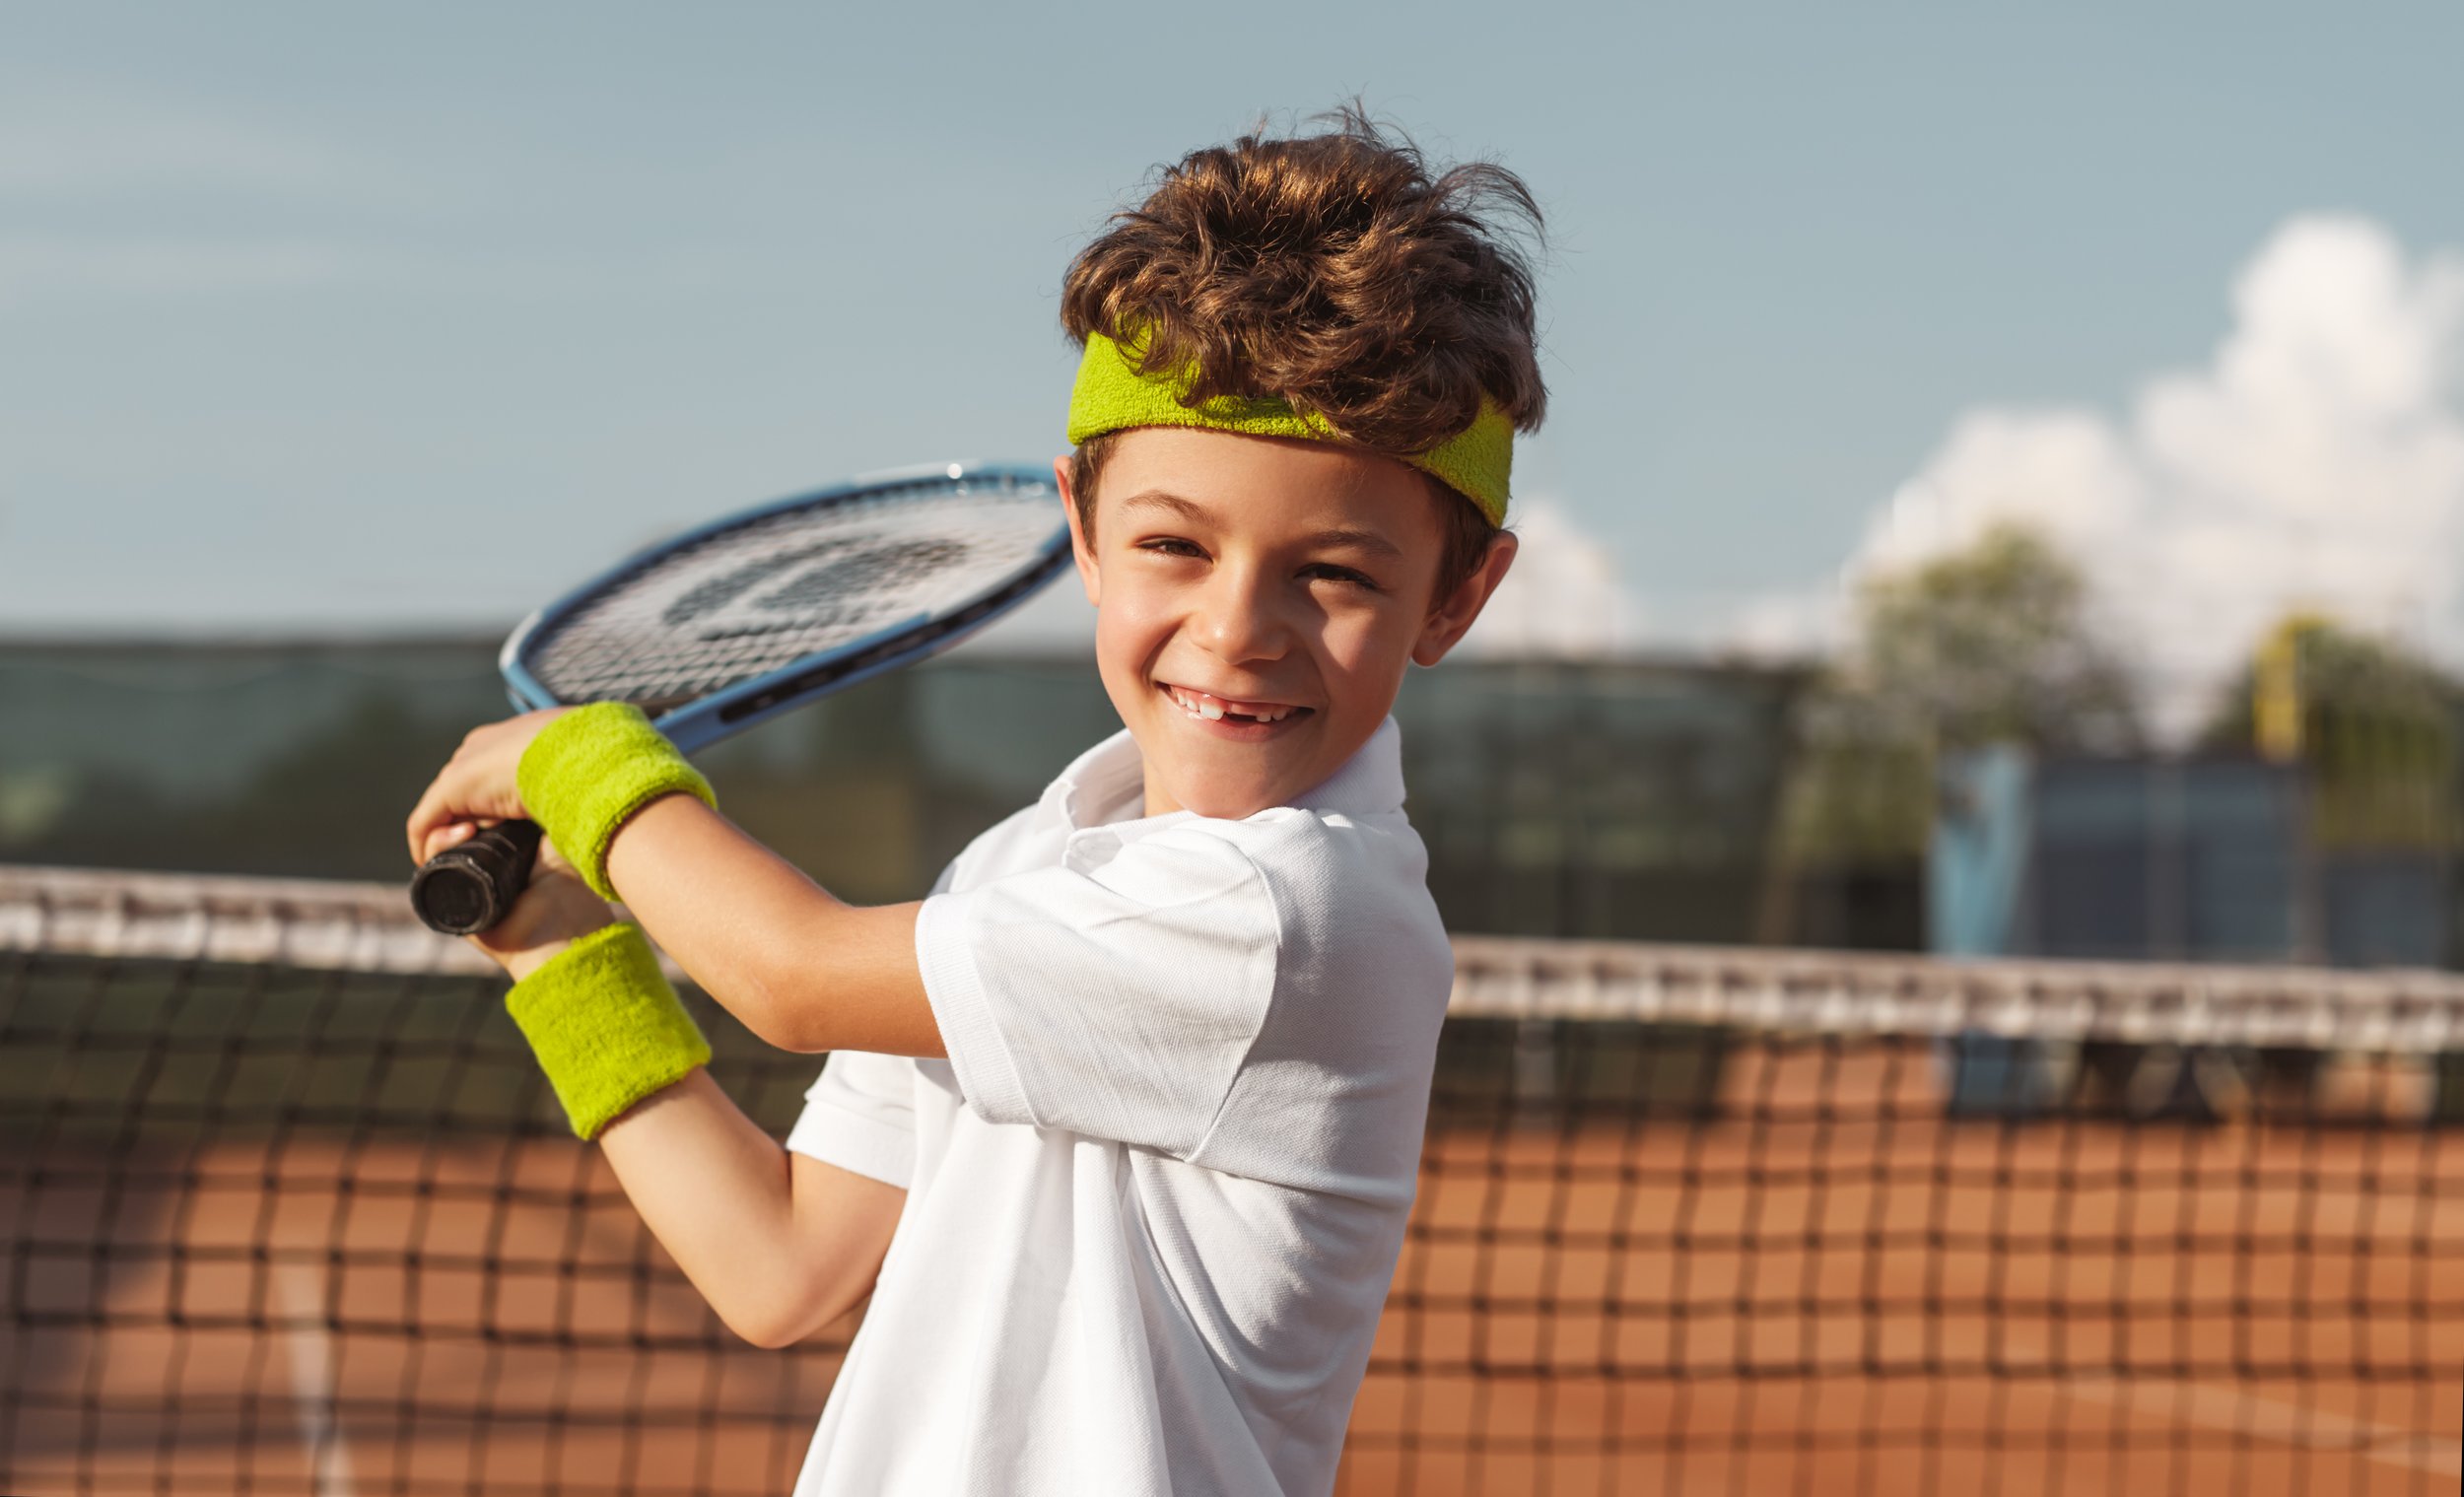 We play tennis when. Мальчик играет в теннис. Детский большой теннис. Кружок теннис. Мальчик с теннисной ракеткой.